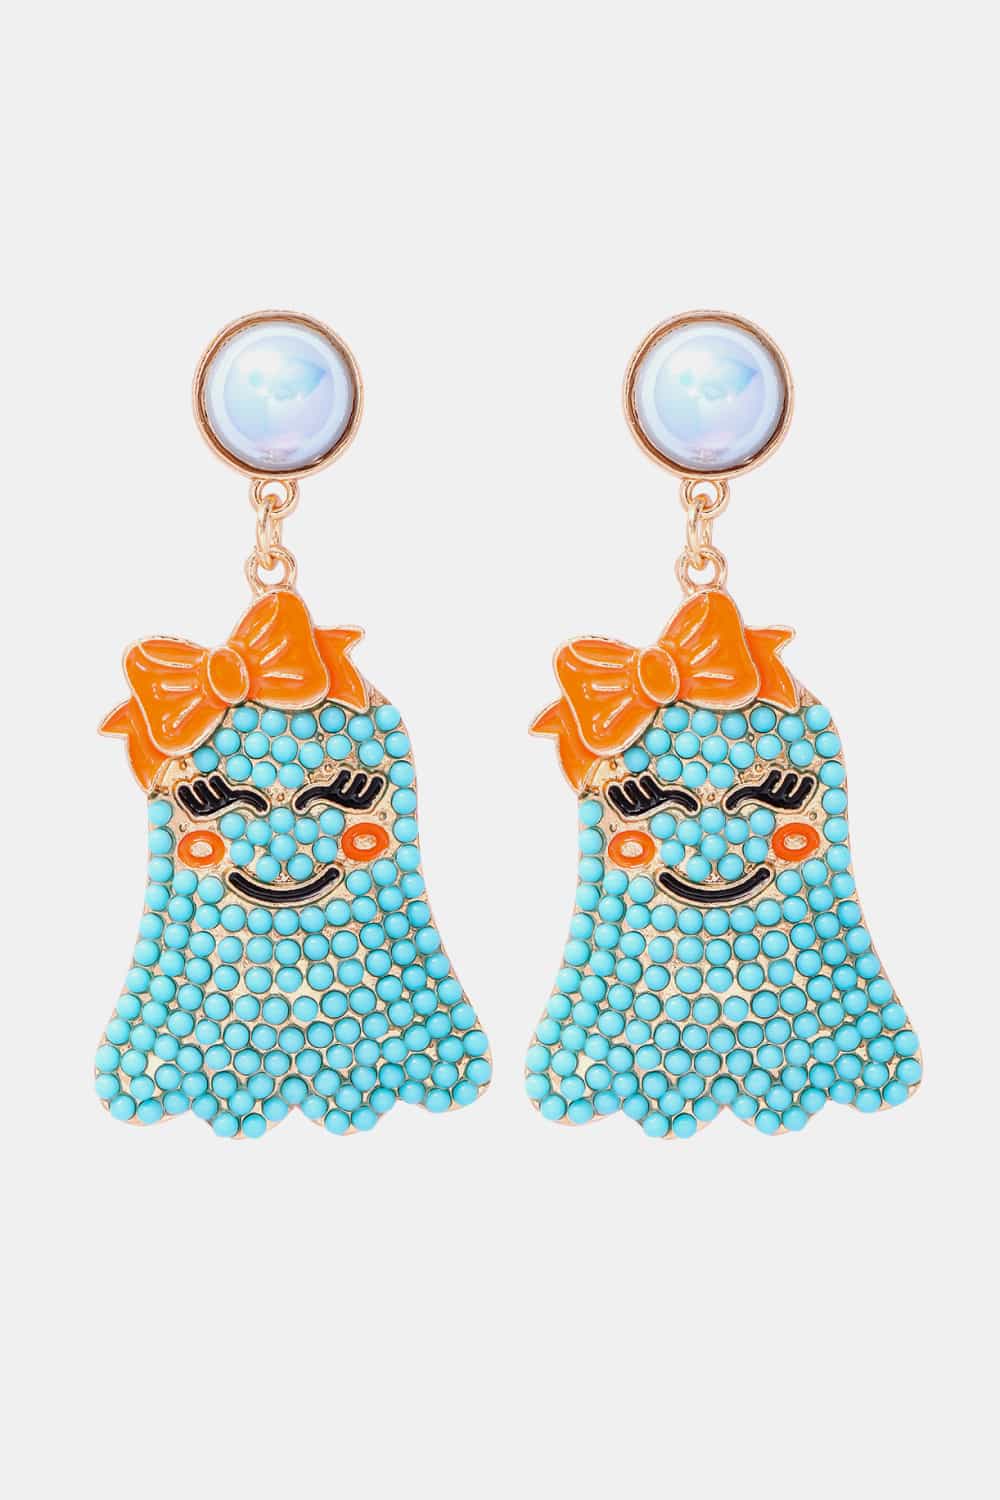 Smiling Ghost Shape Synthetic Pearl Earrings - Blue / One Size - Women’s Jewelry - Earrings - 3 - 2024